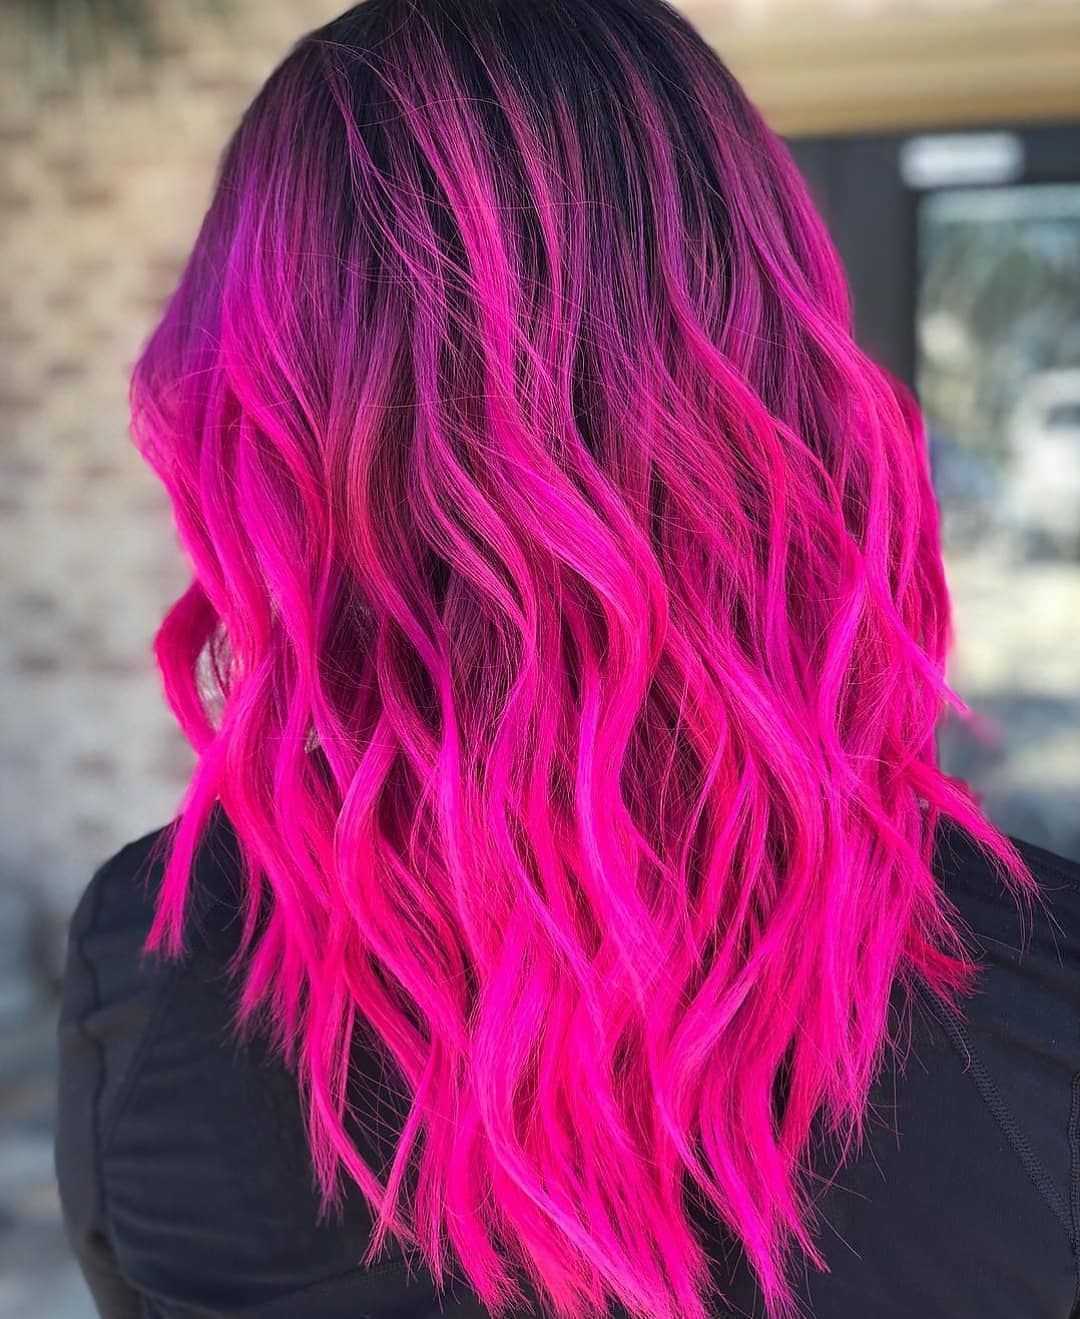 Розовые пряди на волосах — фото 14 модных тонов и как сделать